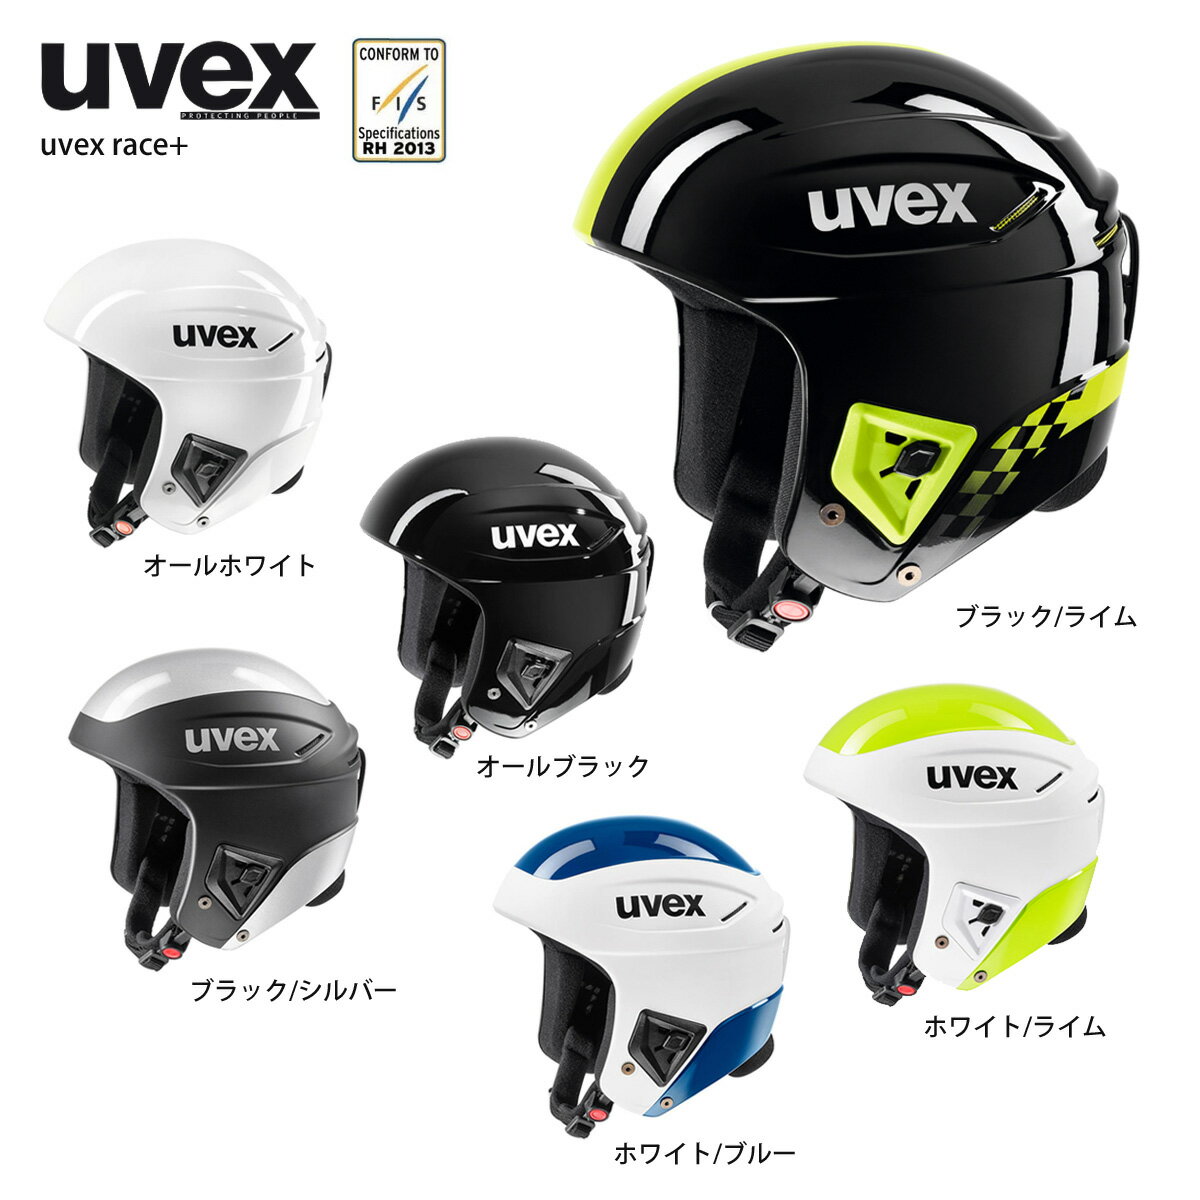 【スーパーセール対象！】スキー ヘルメット メンズ レディース UVEX ウベックス 2022 race+ レースプラス FIS対応 スノーボード